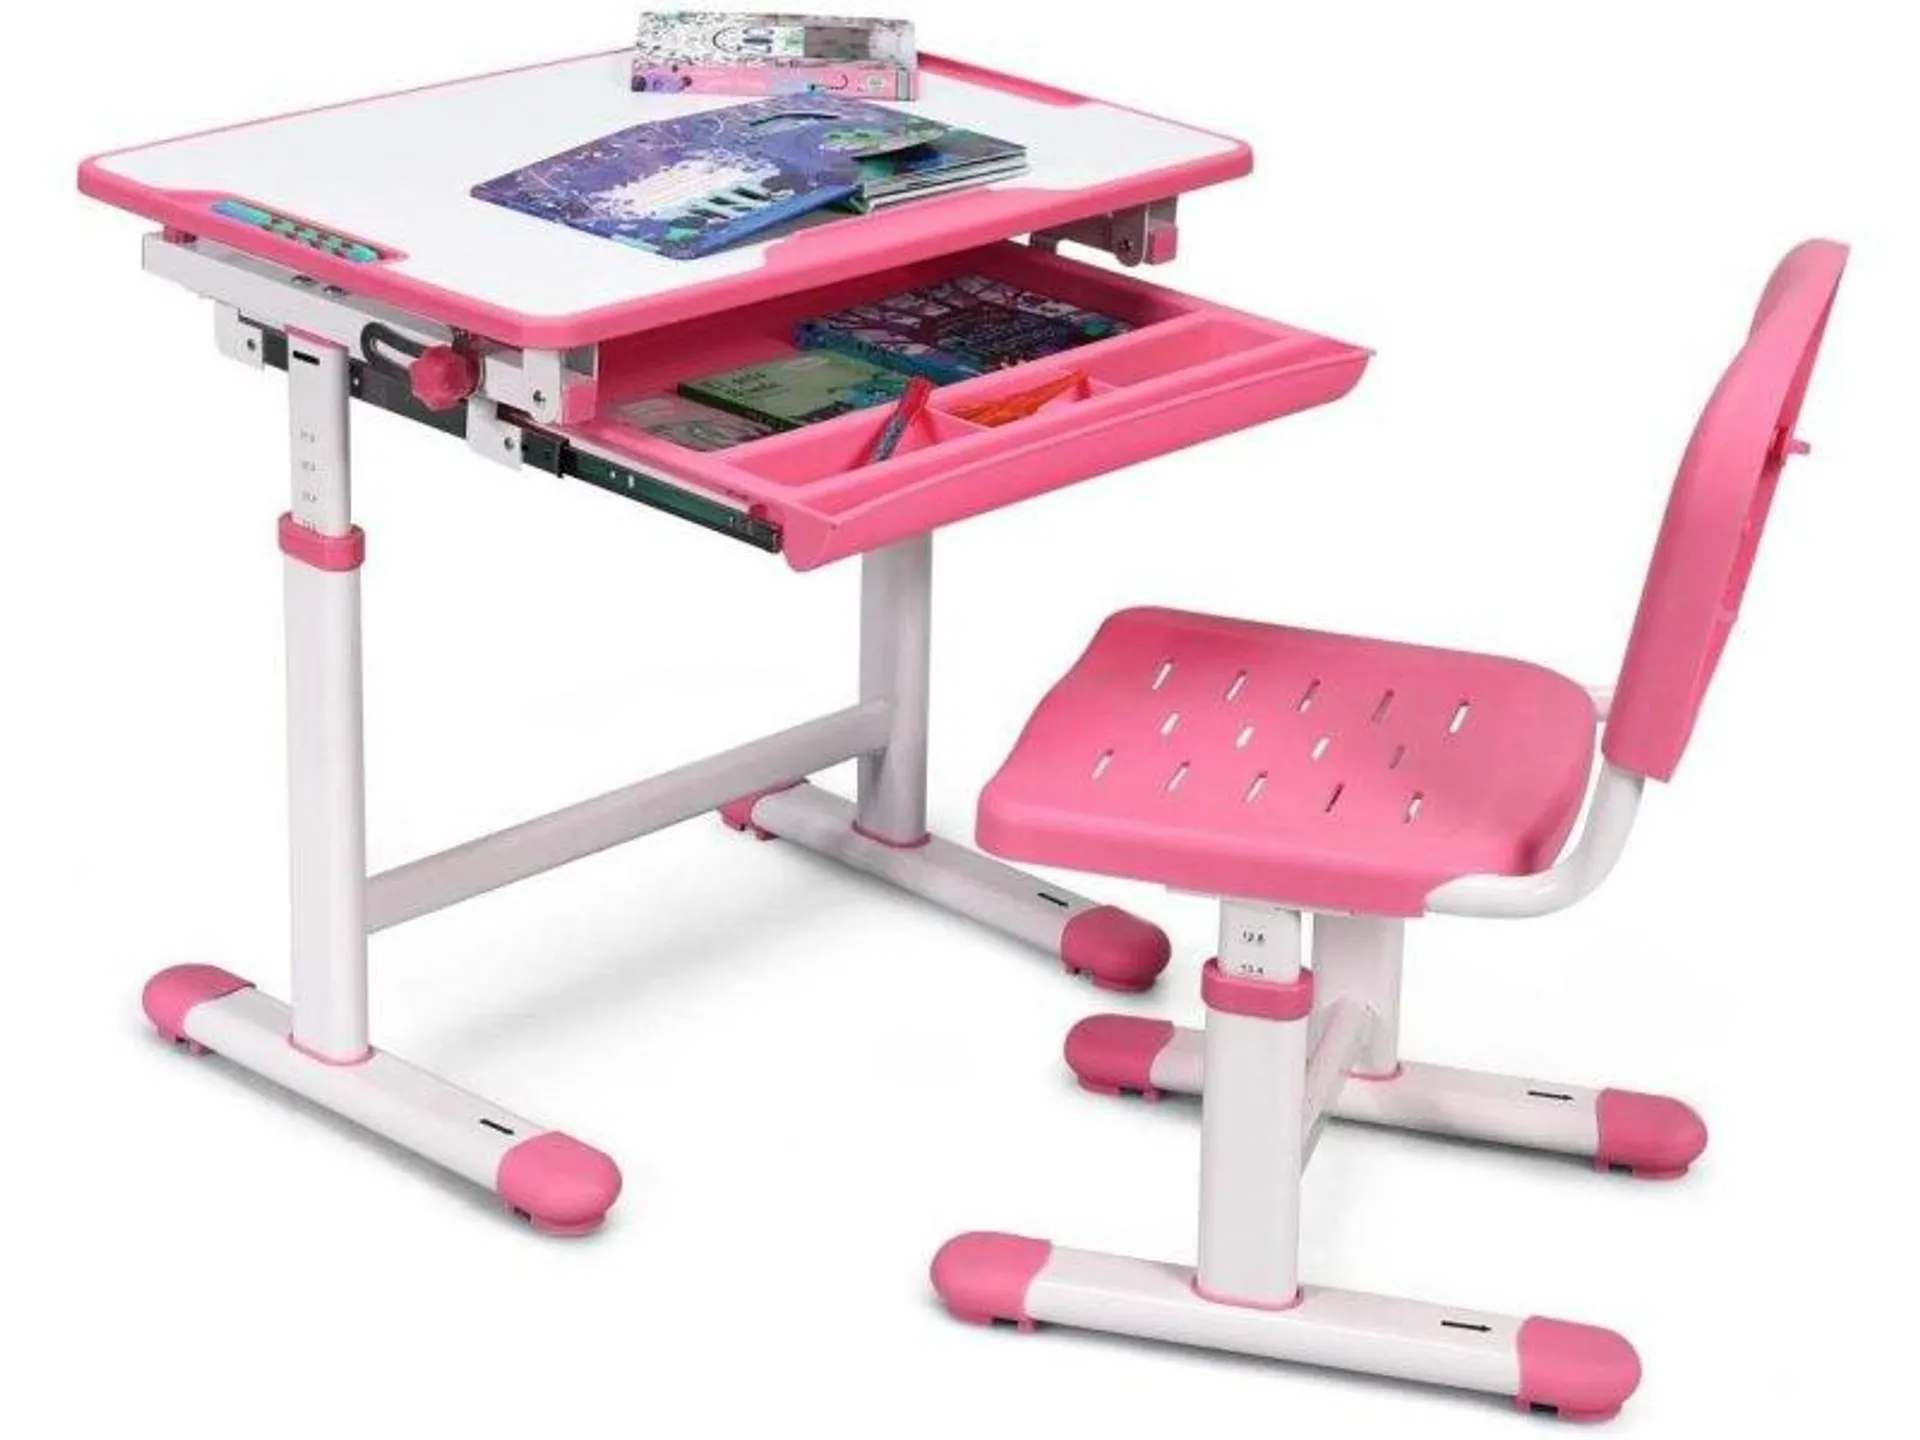 Costway ensemble bureau et chaise pour enfant avec hauteur réglable et table inclinable, avec tiroir et crochet sur côté pour les sacs à dos, encadrement en fer, design ergonomique (rose)